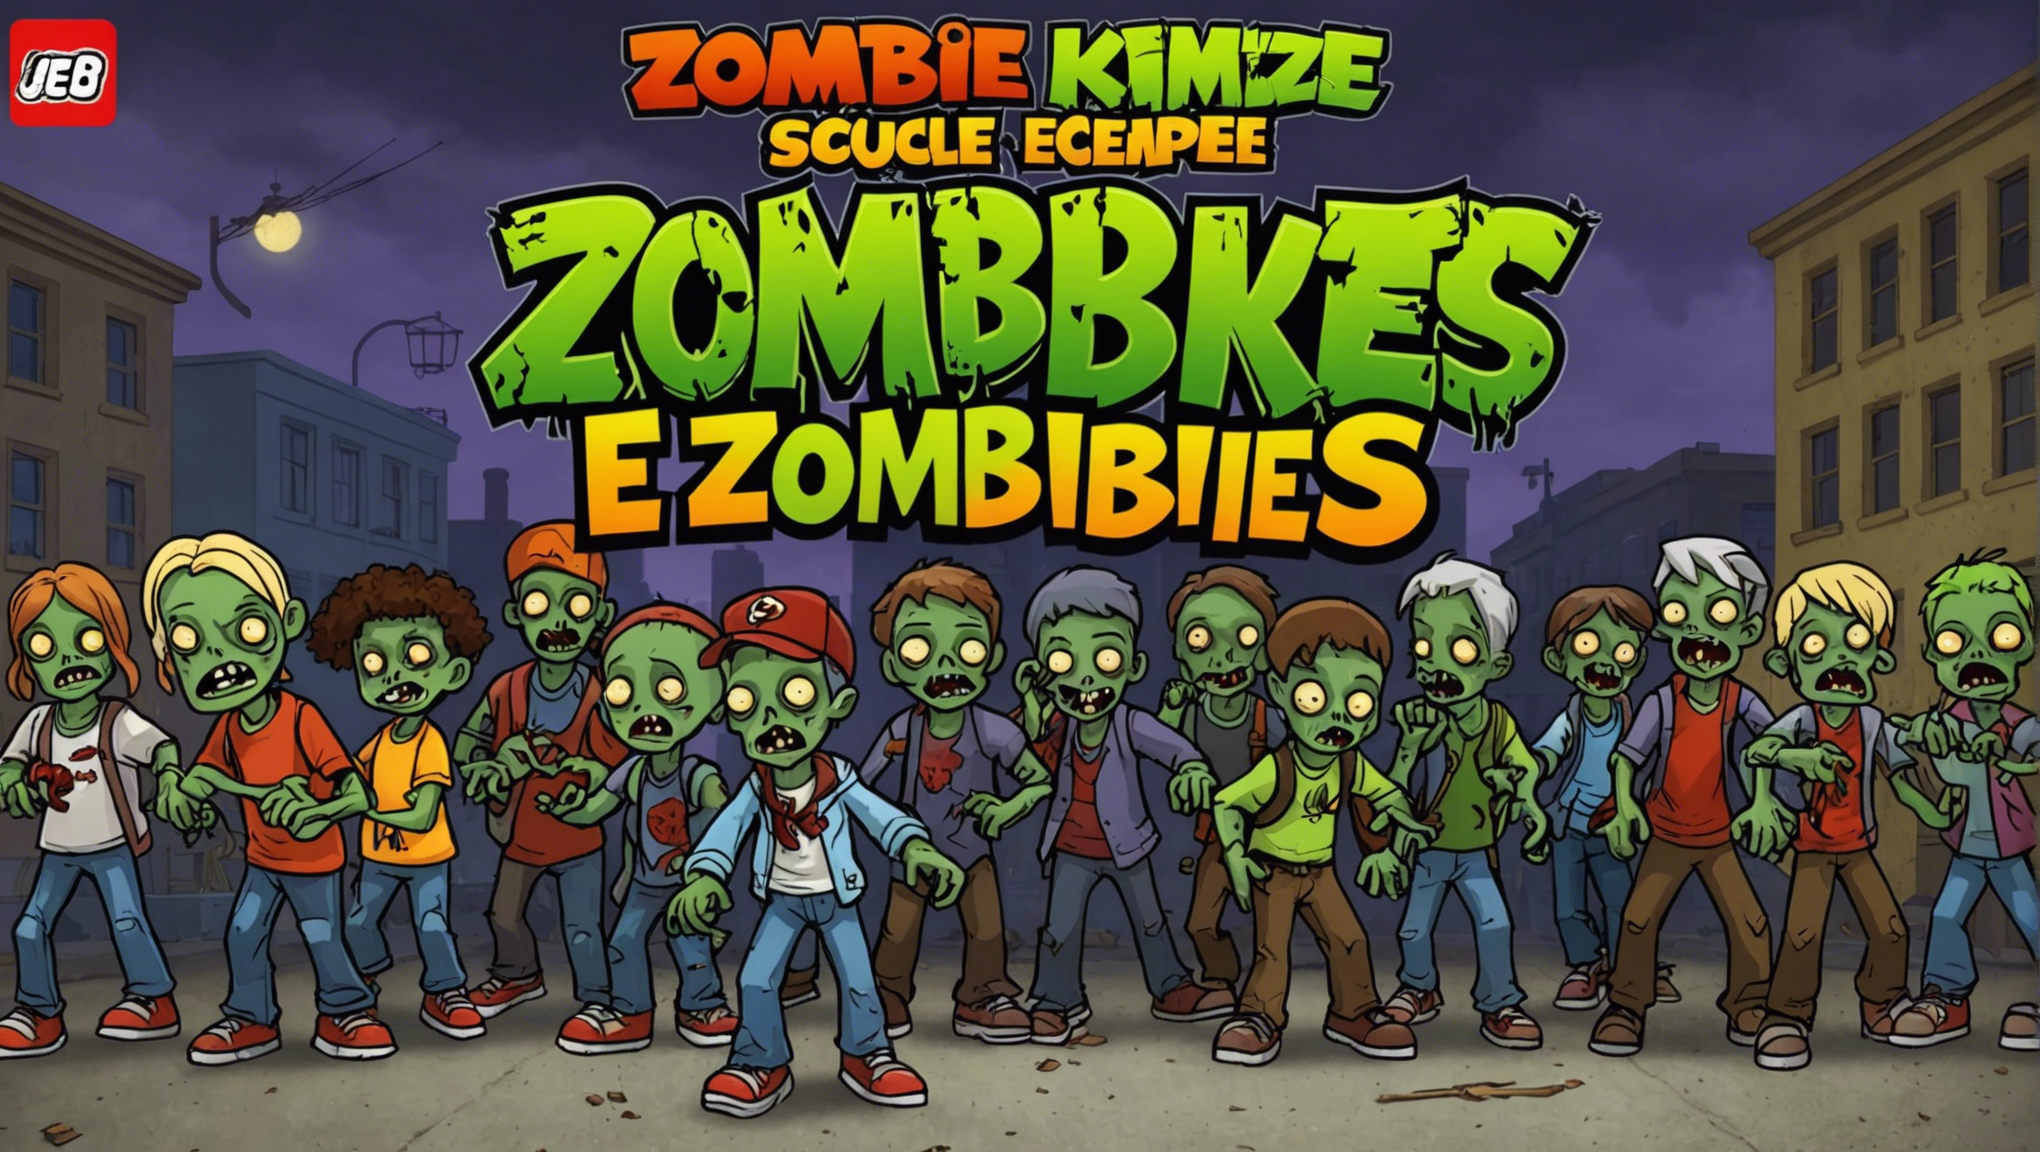 découvrez qui va sauver l'école des zombies dans le jeu de société zombie kidz, un jeu palpitant rempli d'aventure et de suspense. rejoignez la lutte contre les morts-vivants et tentez de protéger l'école à tout prix !